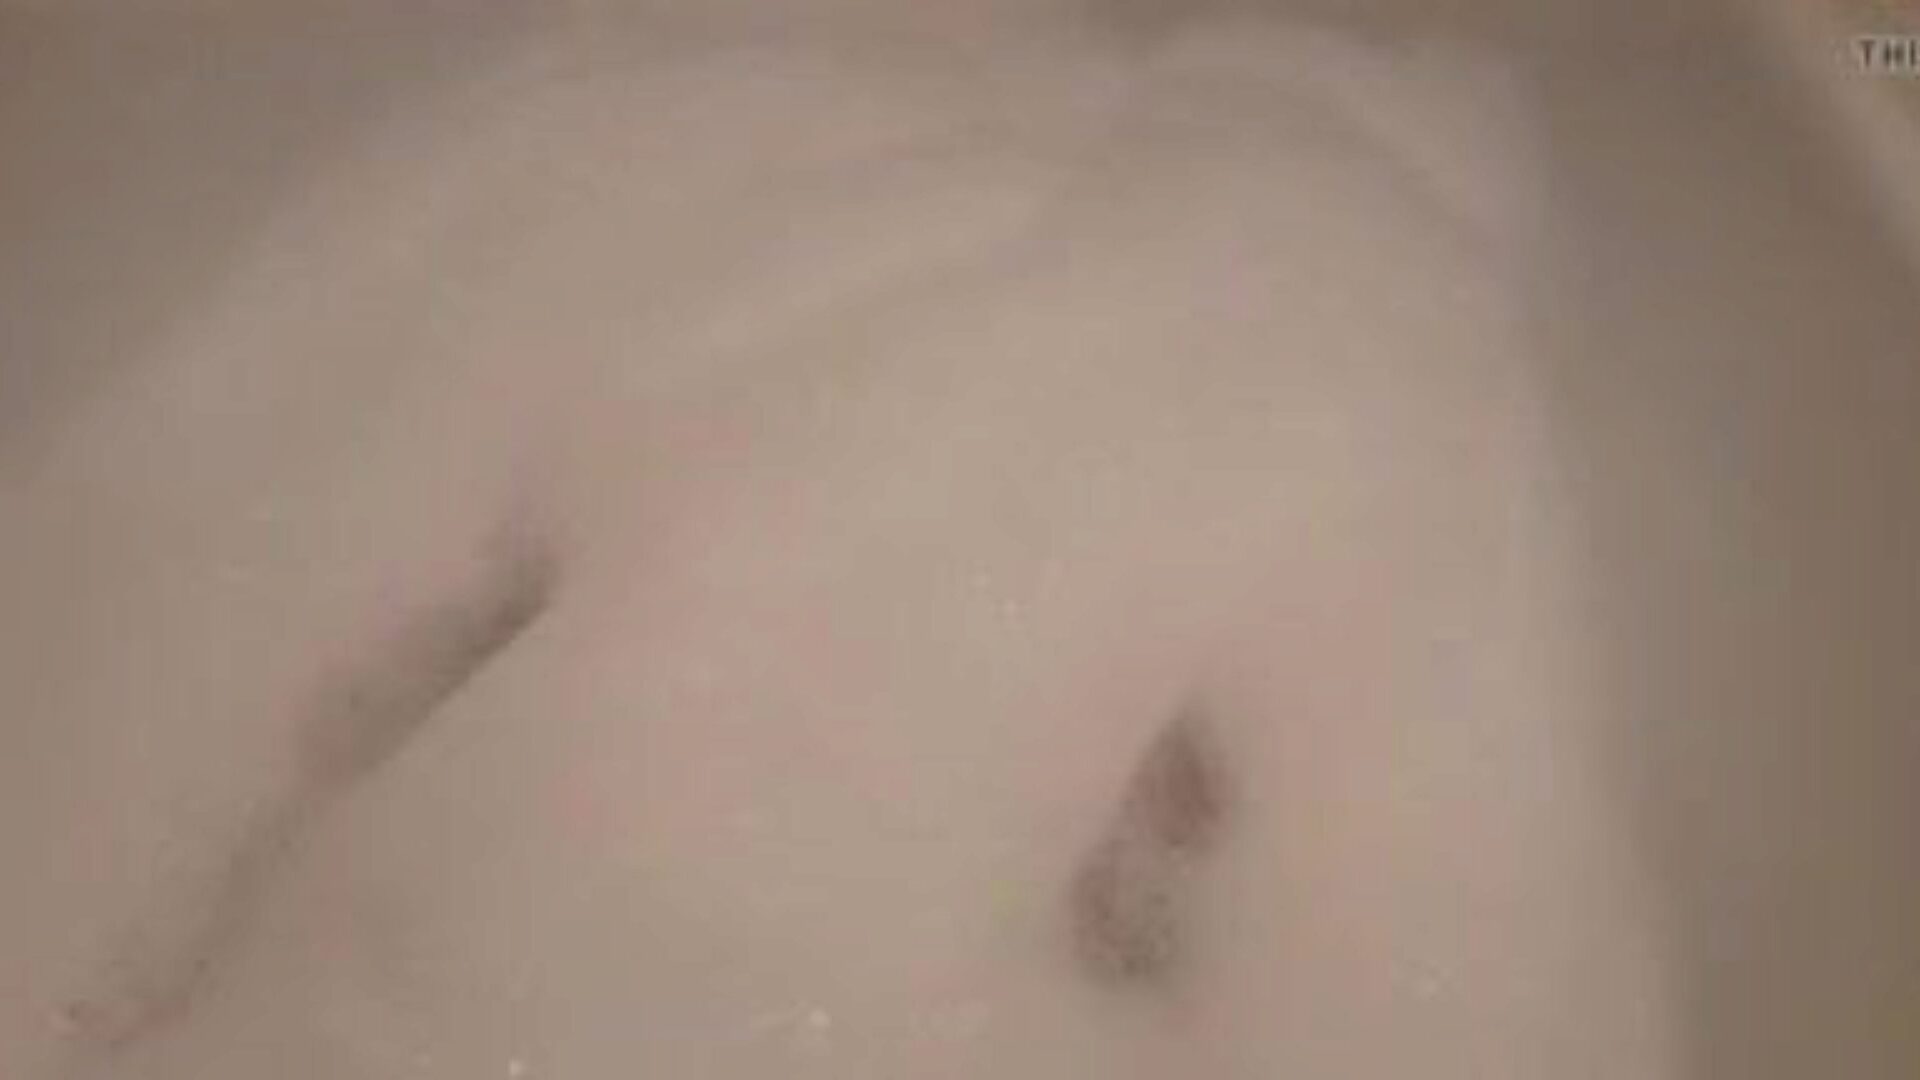 linda bath2: kostenloses eng-muschi porno video 10 - xhamster schau dir linda bath2 rohr fickfest video kostenlos für alle auf xhamster an, mit der sexiesten sammlung deutscher enger muschi, wasser & neunundsechzig porno video vignetten